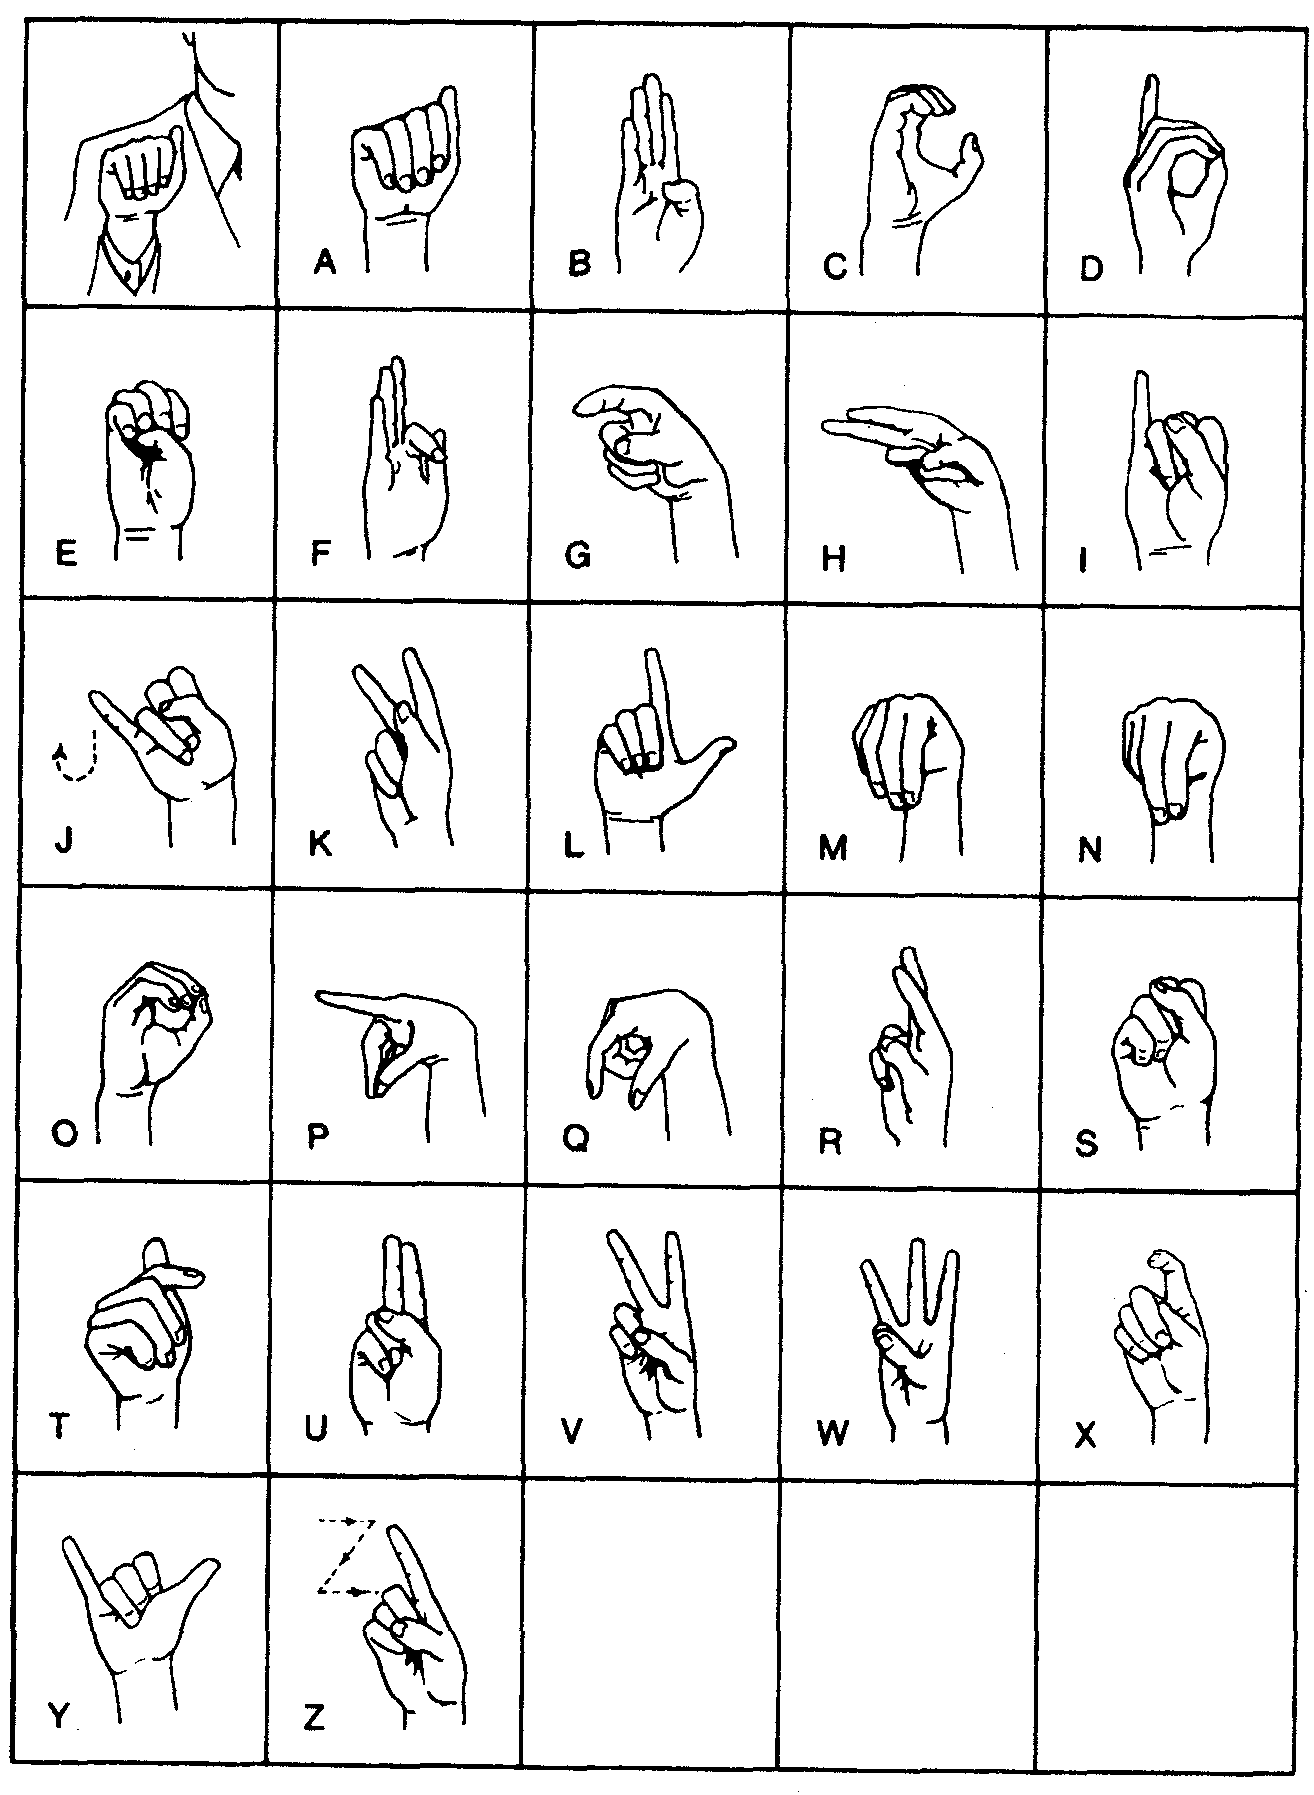 Русский язык для слабослышащих. Язык жестов глухонемых алфавит. Международный дактильный алфавит. Дактиль язык жестов алфавит. Язык руками для глухонемых.